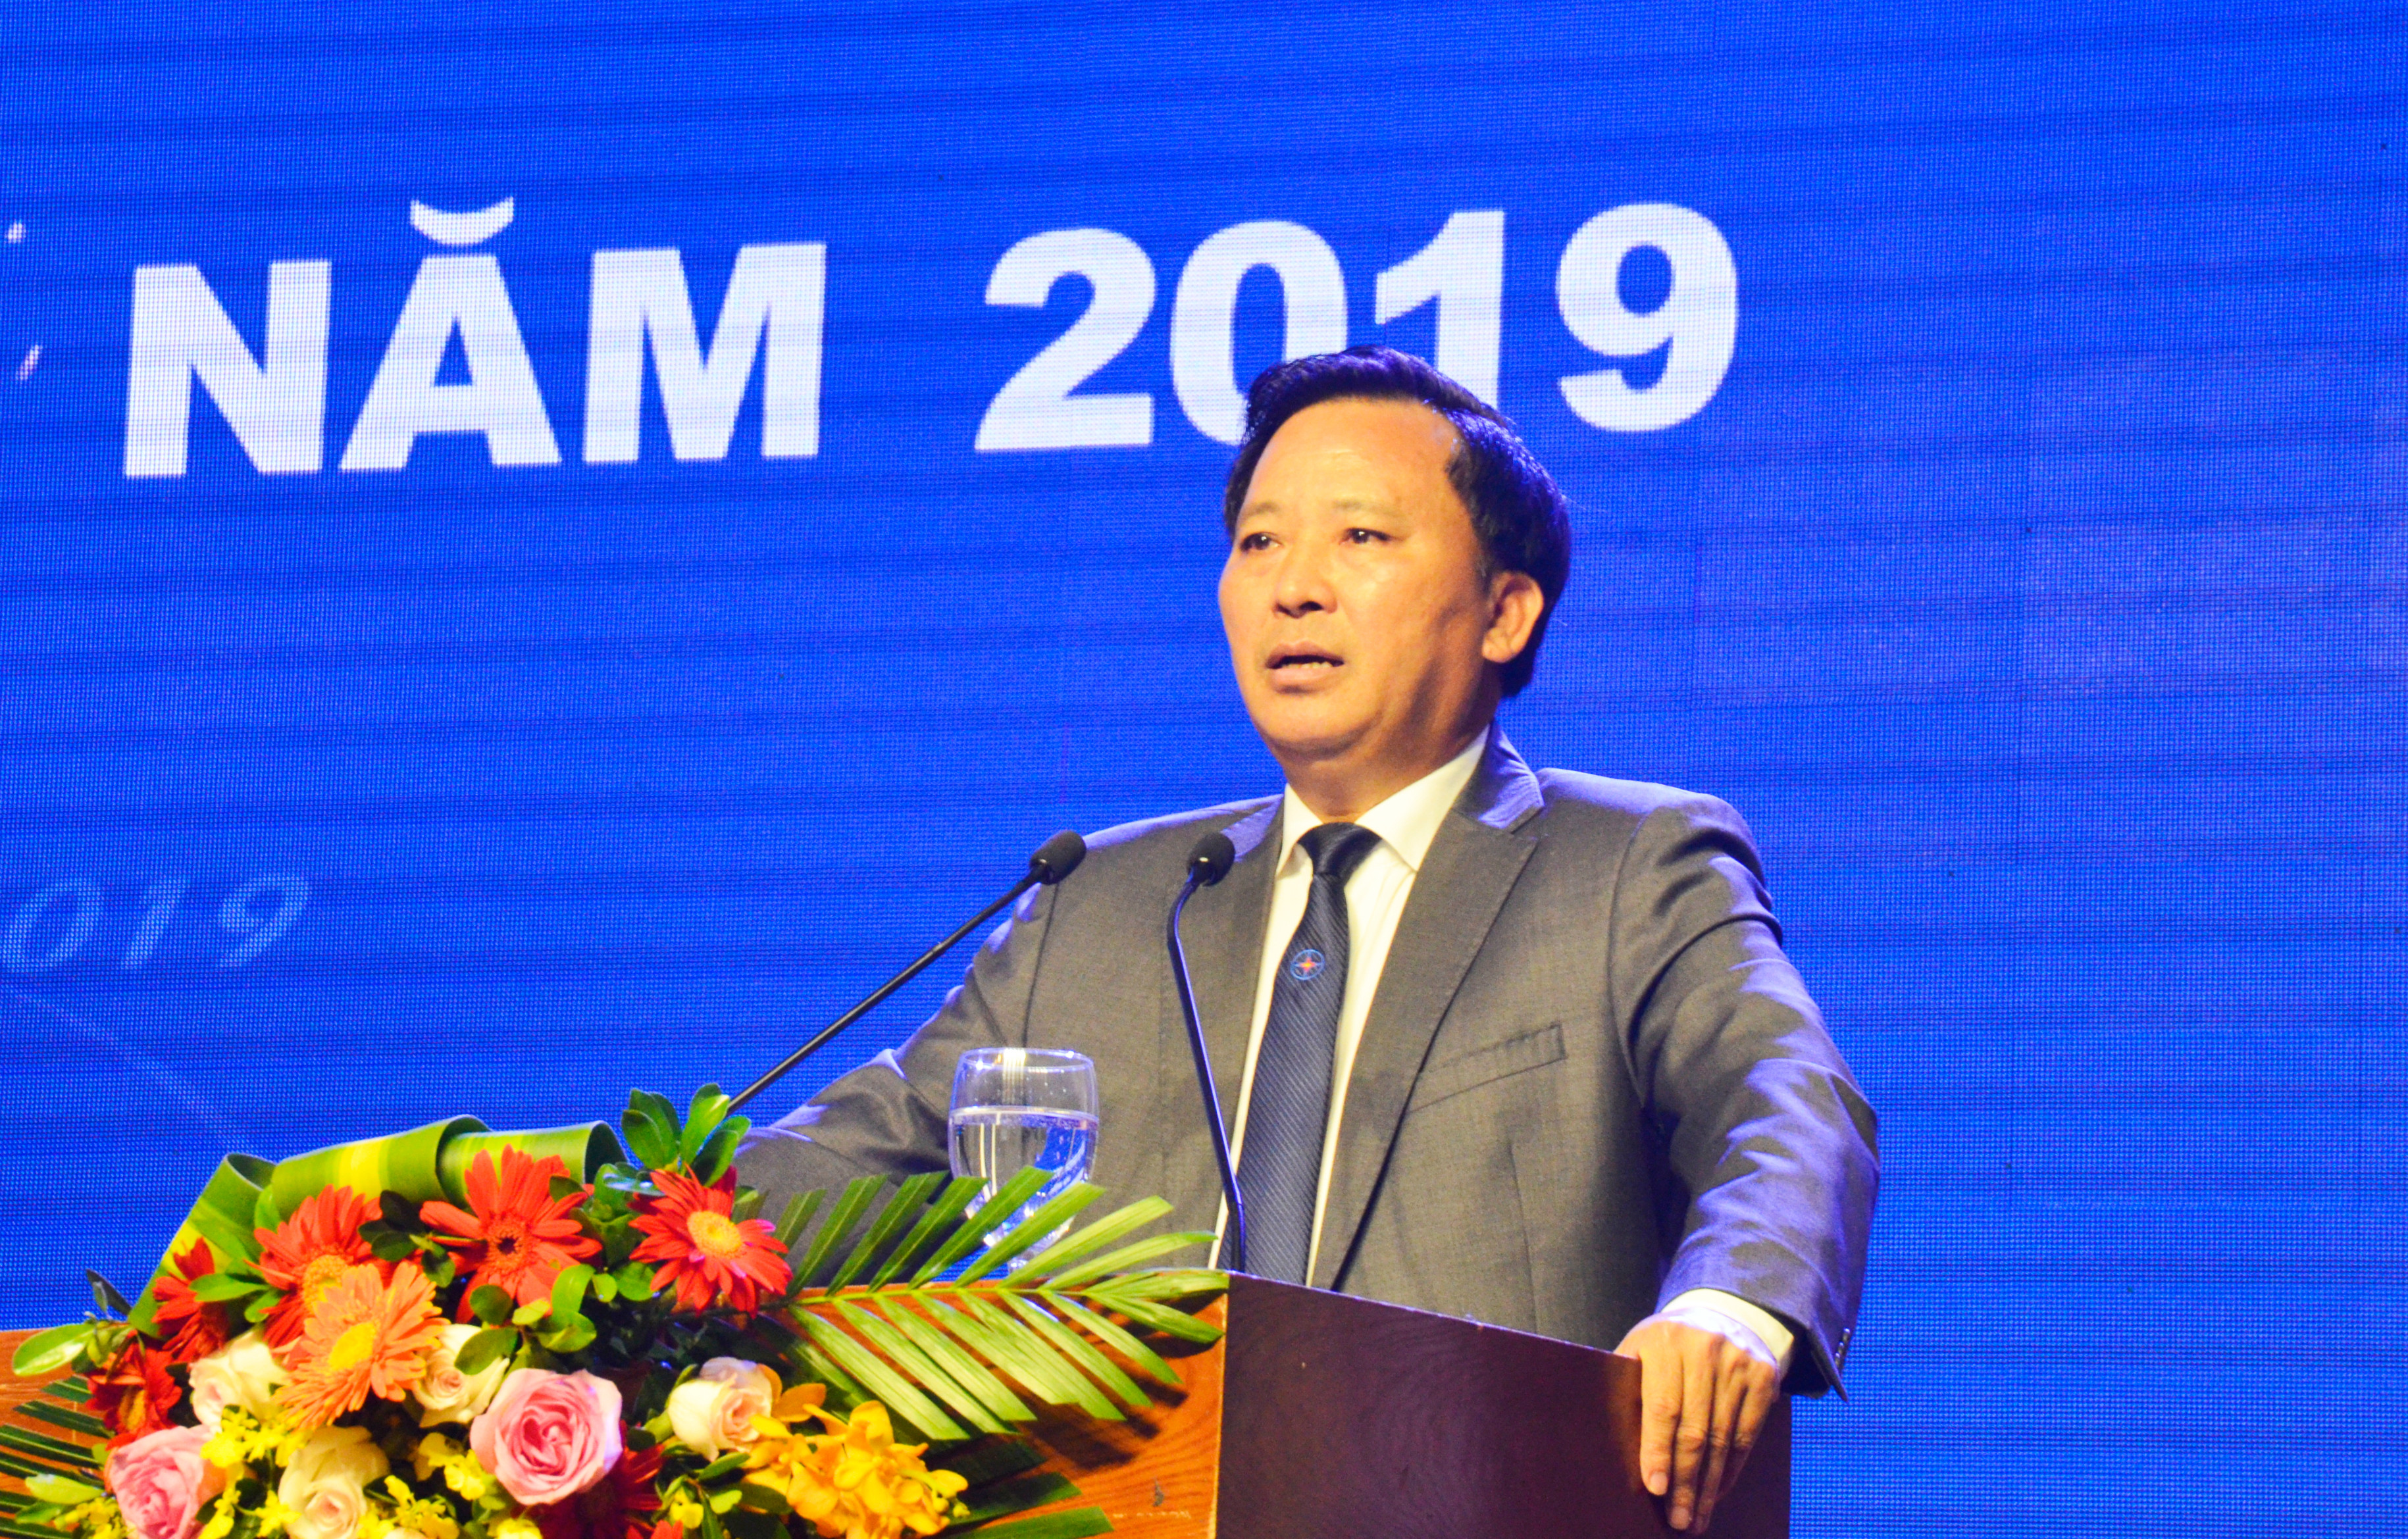 Phó Giám đốc Công ty Điện lực Nghệ An Nguyễn Xuân Lợi phát biểu báo cáo kết quả sản xuất kinh doanh của đơn vị. Ảnh: Thanh Lê